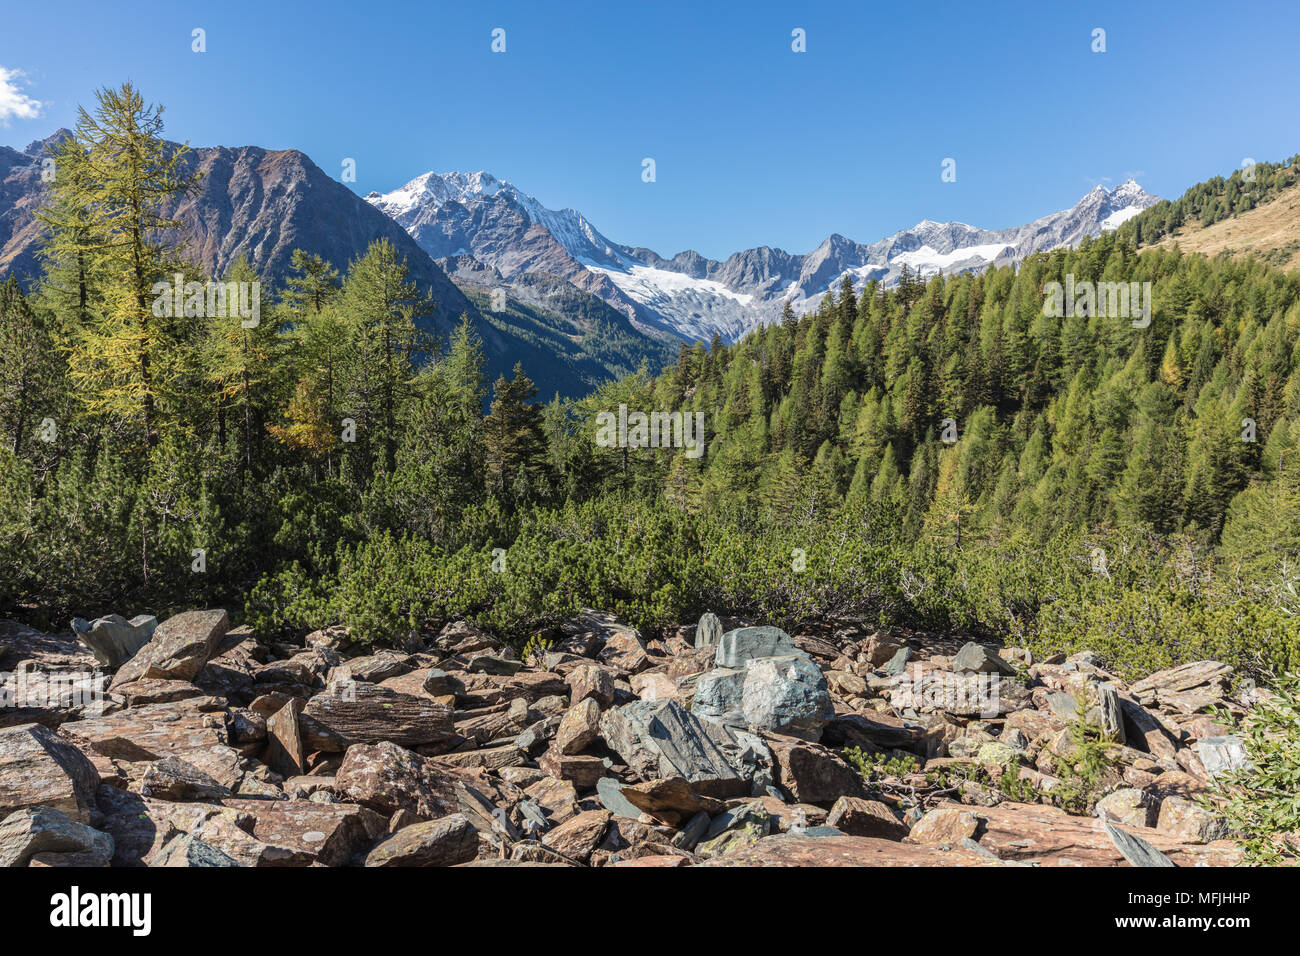 Monte Disgrazia seen from Valle di Chiareggio, Malenco Valley, province of Sondrio, Valtellina, Lombardy, Italy, Europe Stock Photo